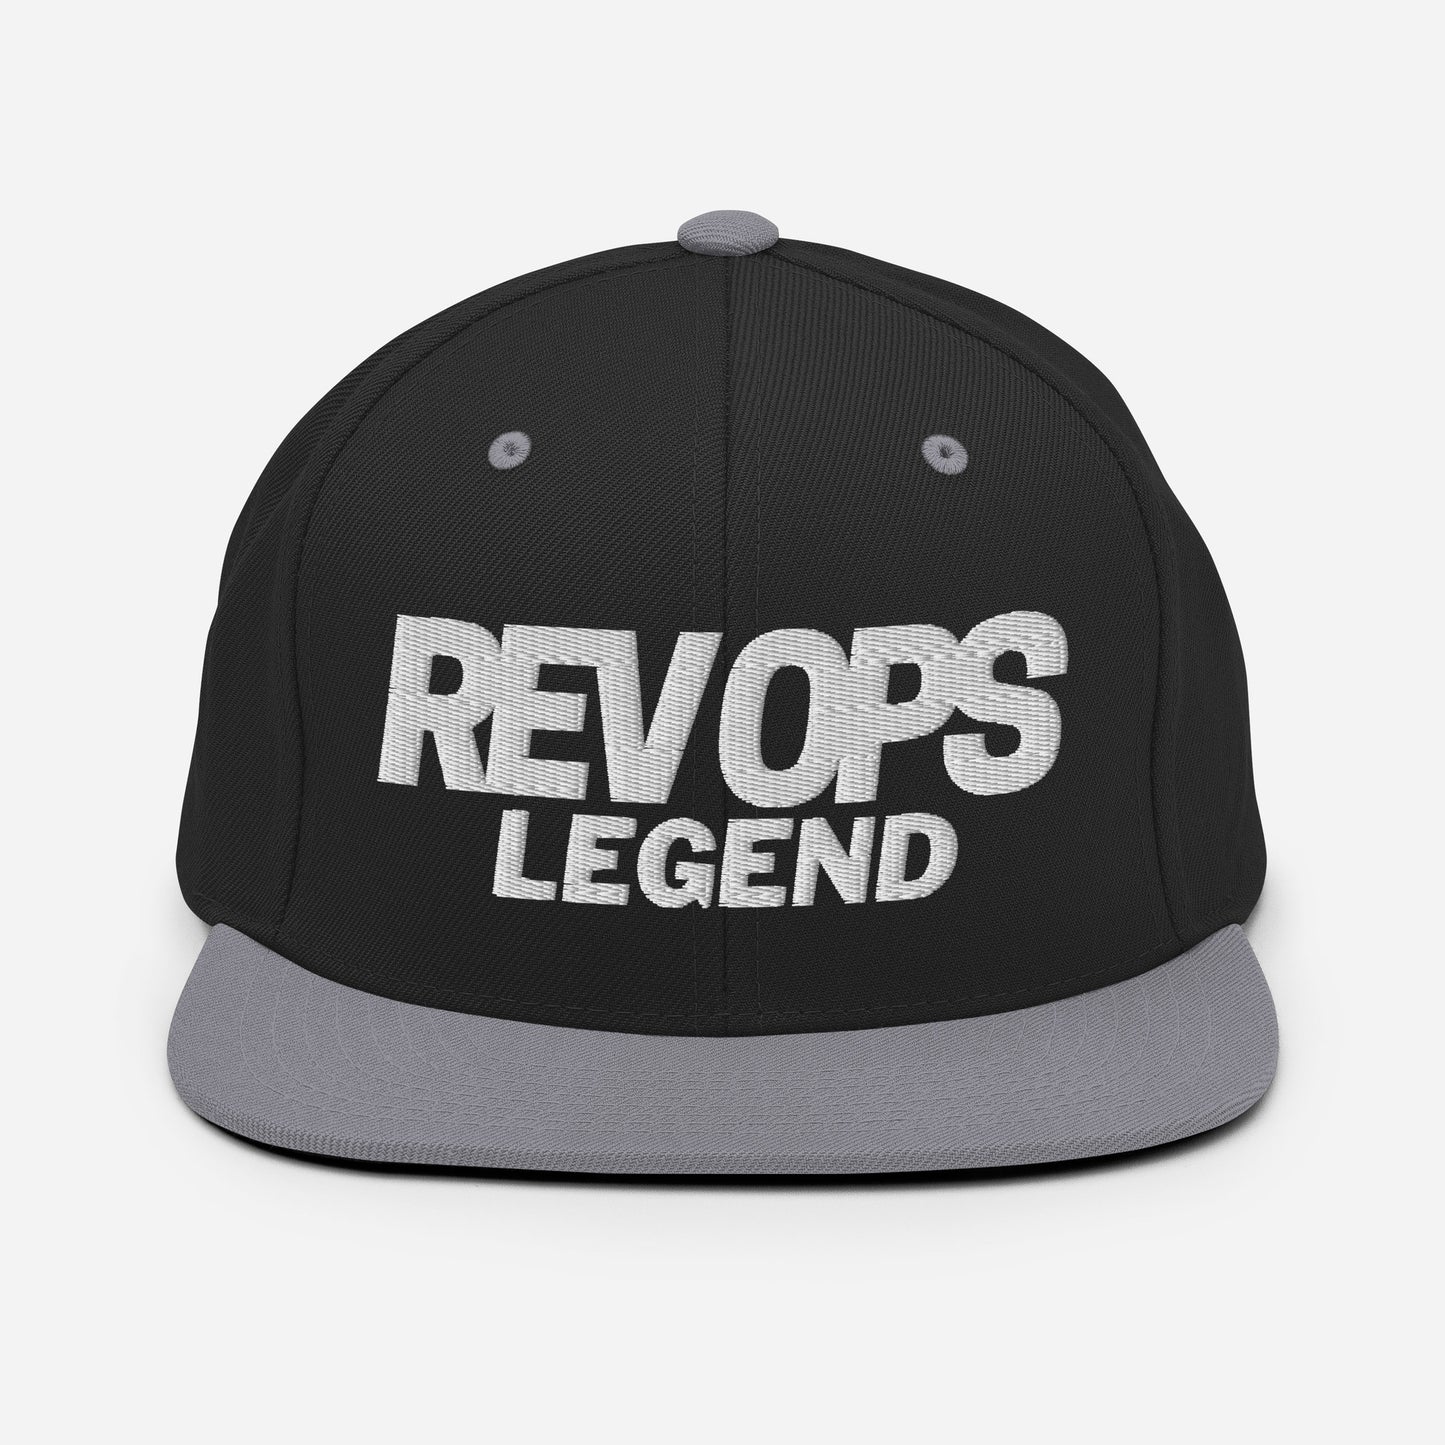 Rev Ops Legend Snapback Hat